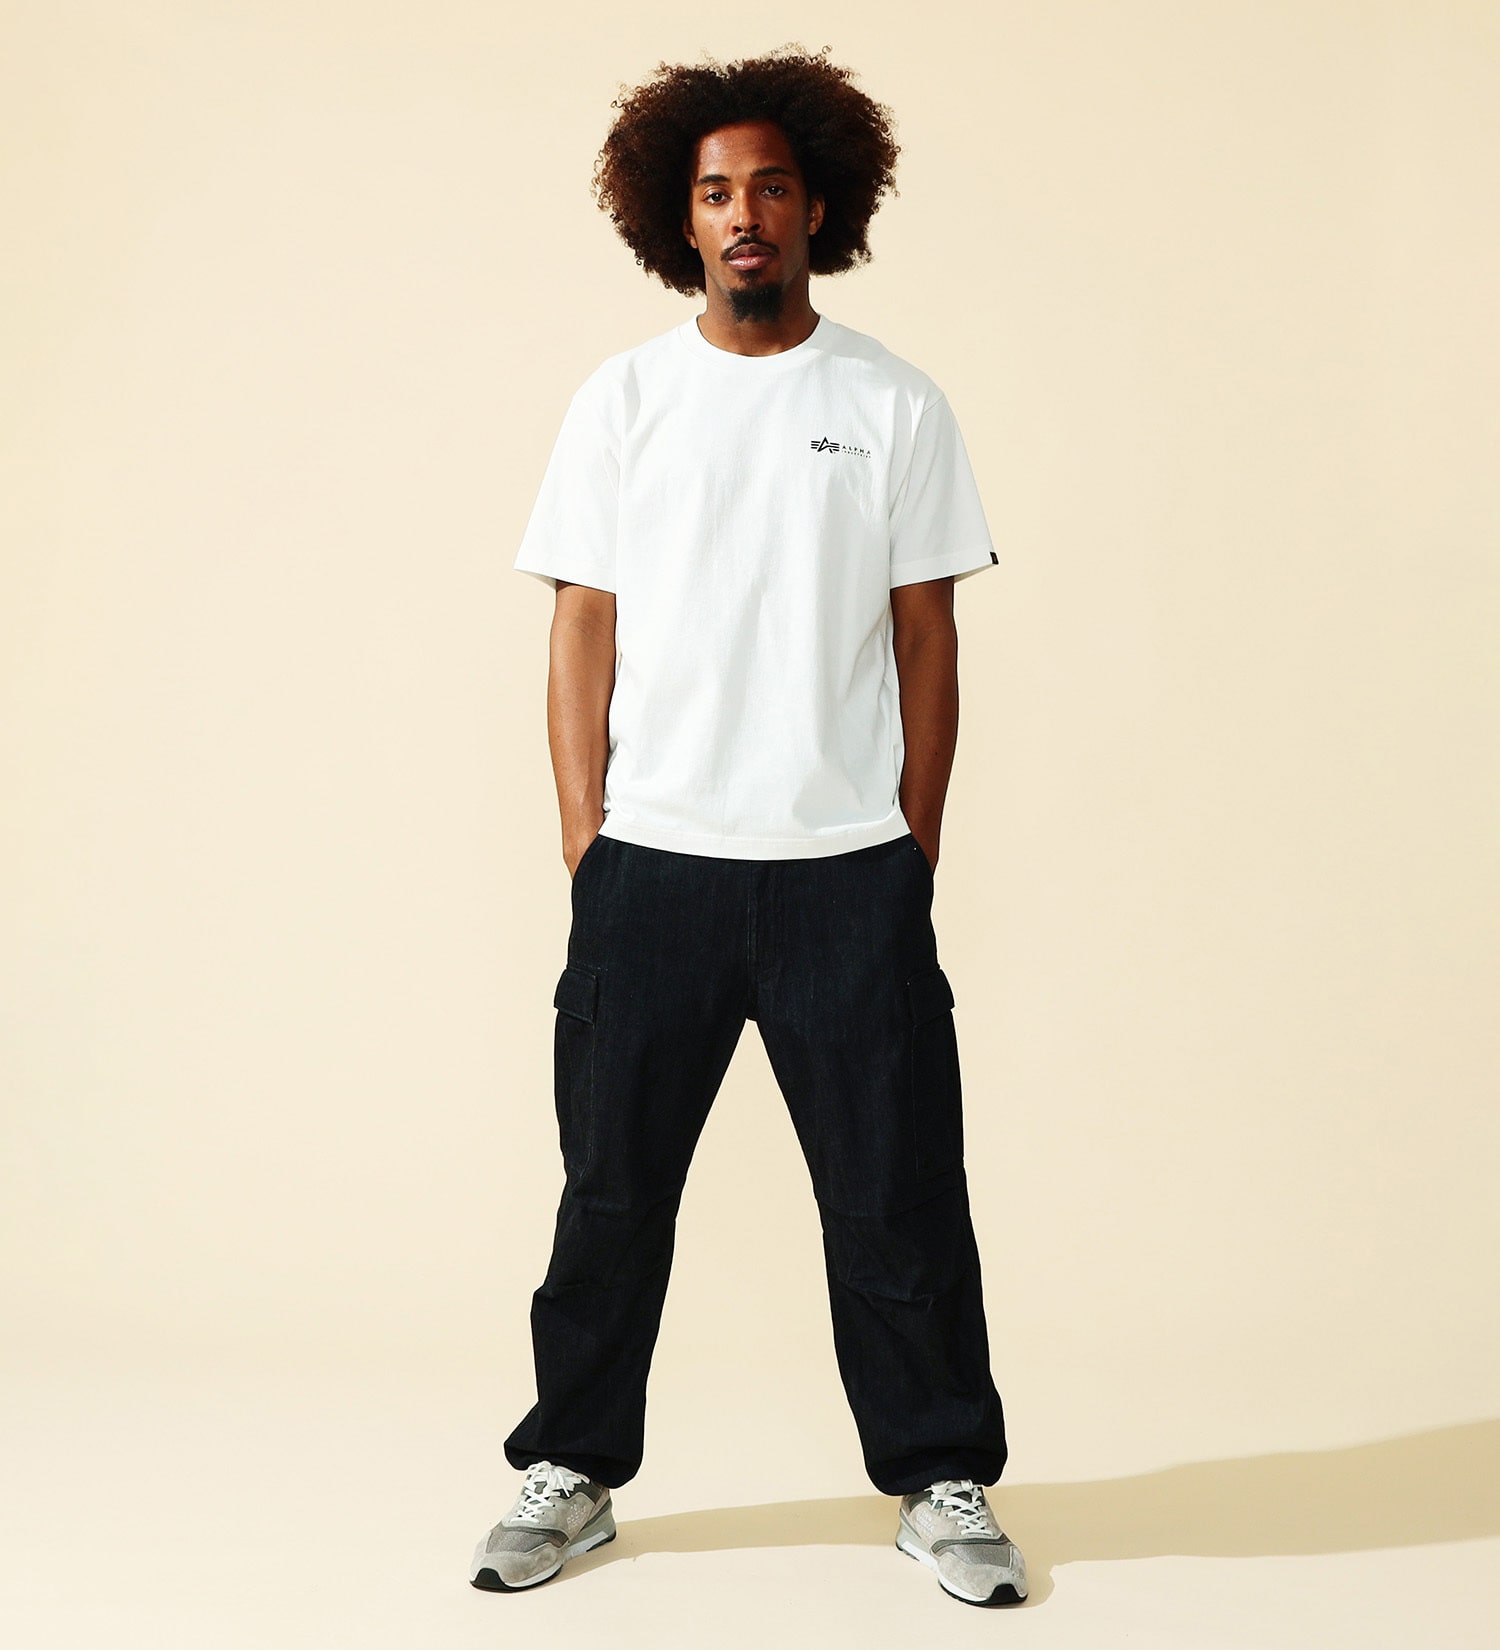 ALPHA(アルファ)のMIL.SPECバックプリントTシャツ 半袖|トップス/Tシャツ/カットソー/メンズ|ホワイト